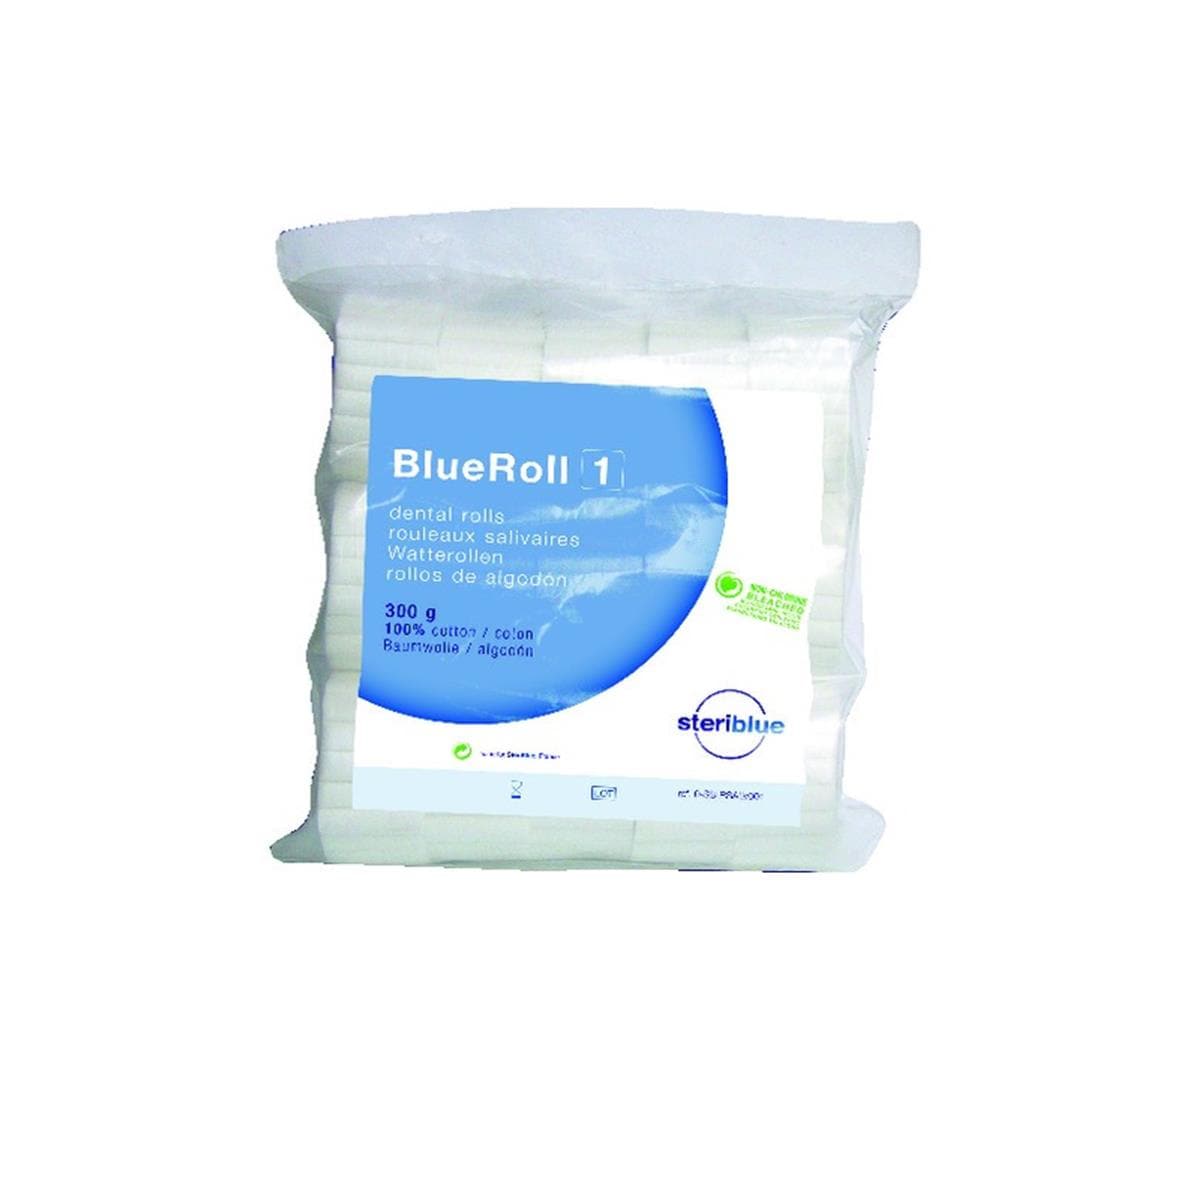 Rouleaux Salivaires Blueroll STERIBLUE - n1 - Sachet de 300 g